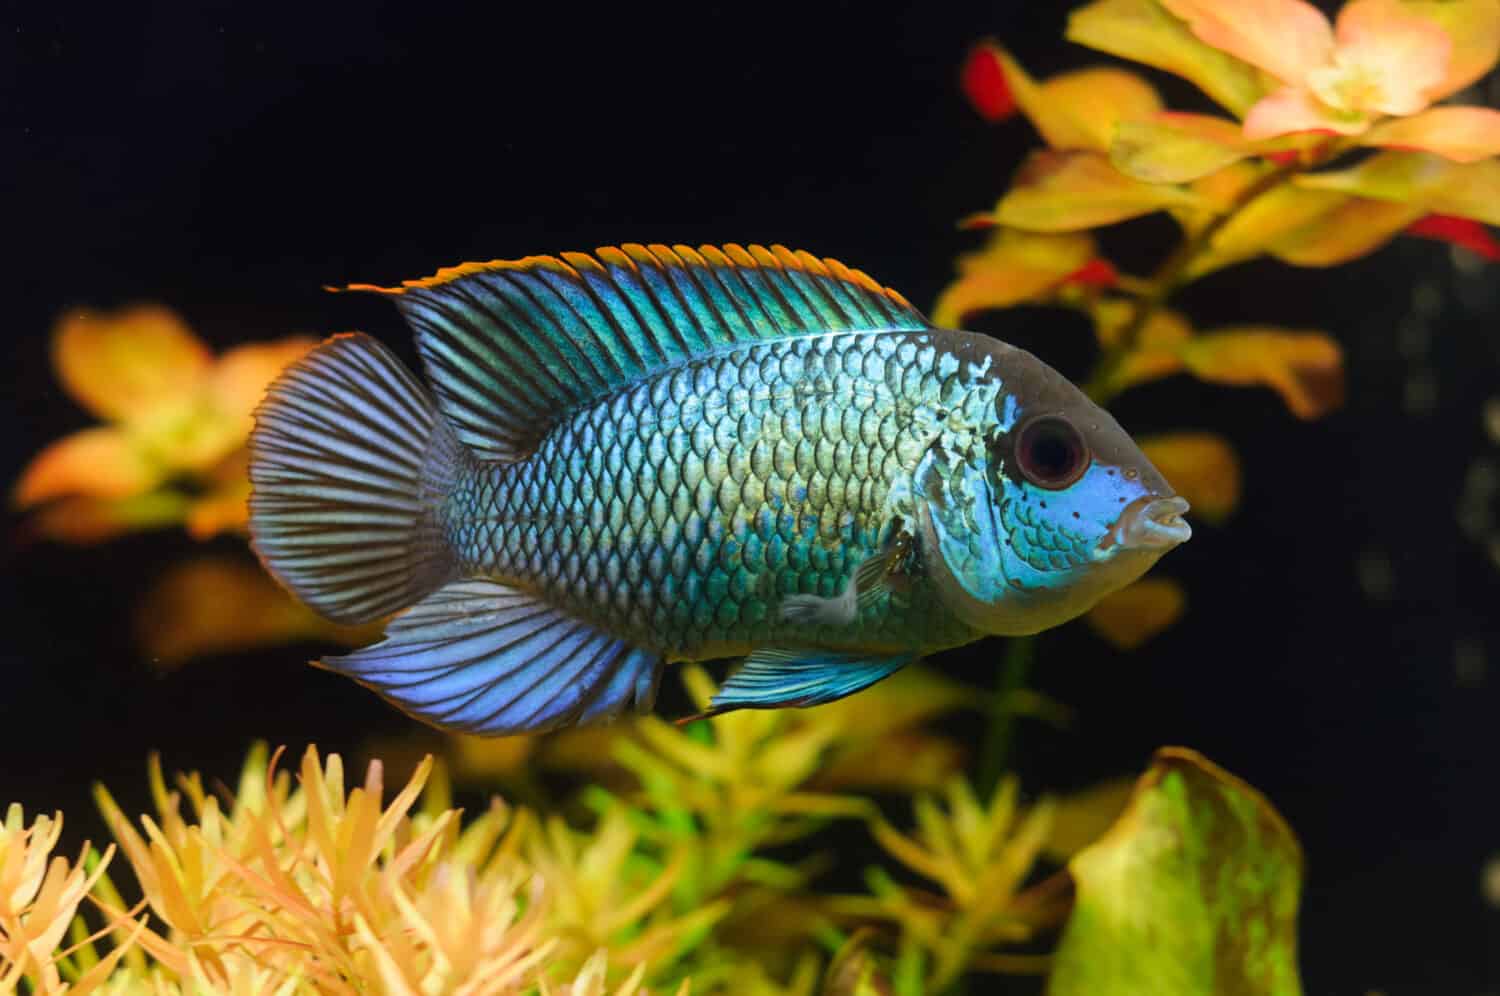 Electric Blue Acara Cichlid Fish (Nannacara Neon Blue) in aquarium